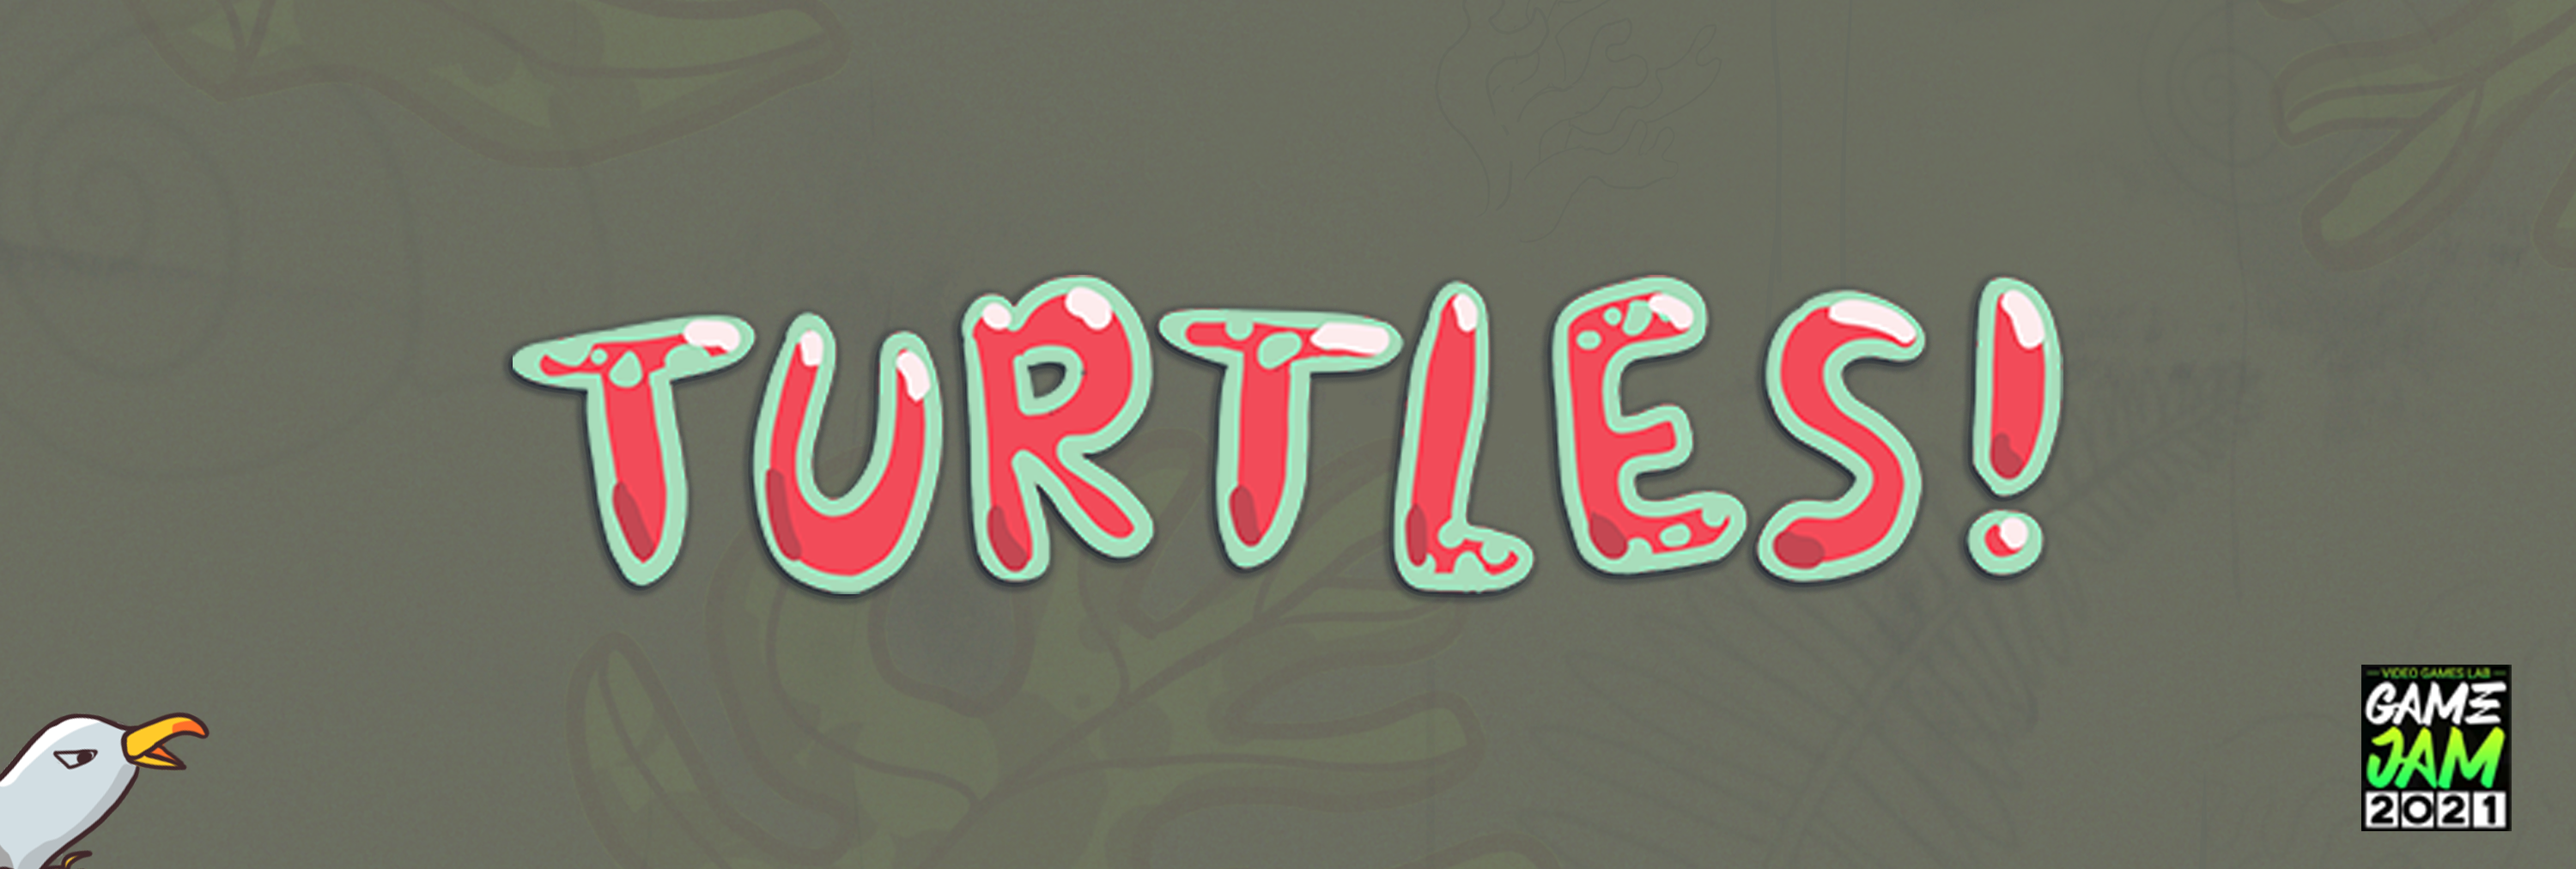 Turtles!